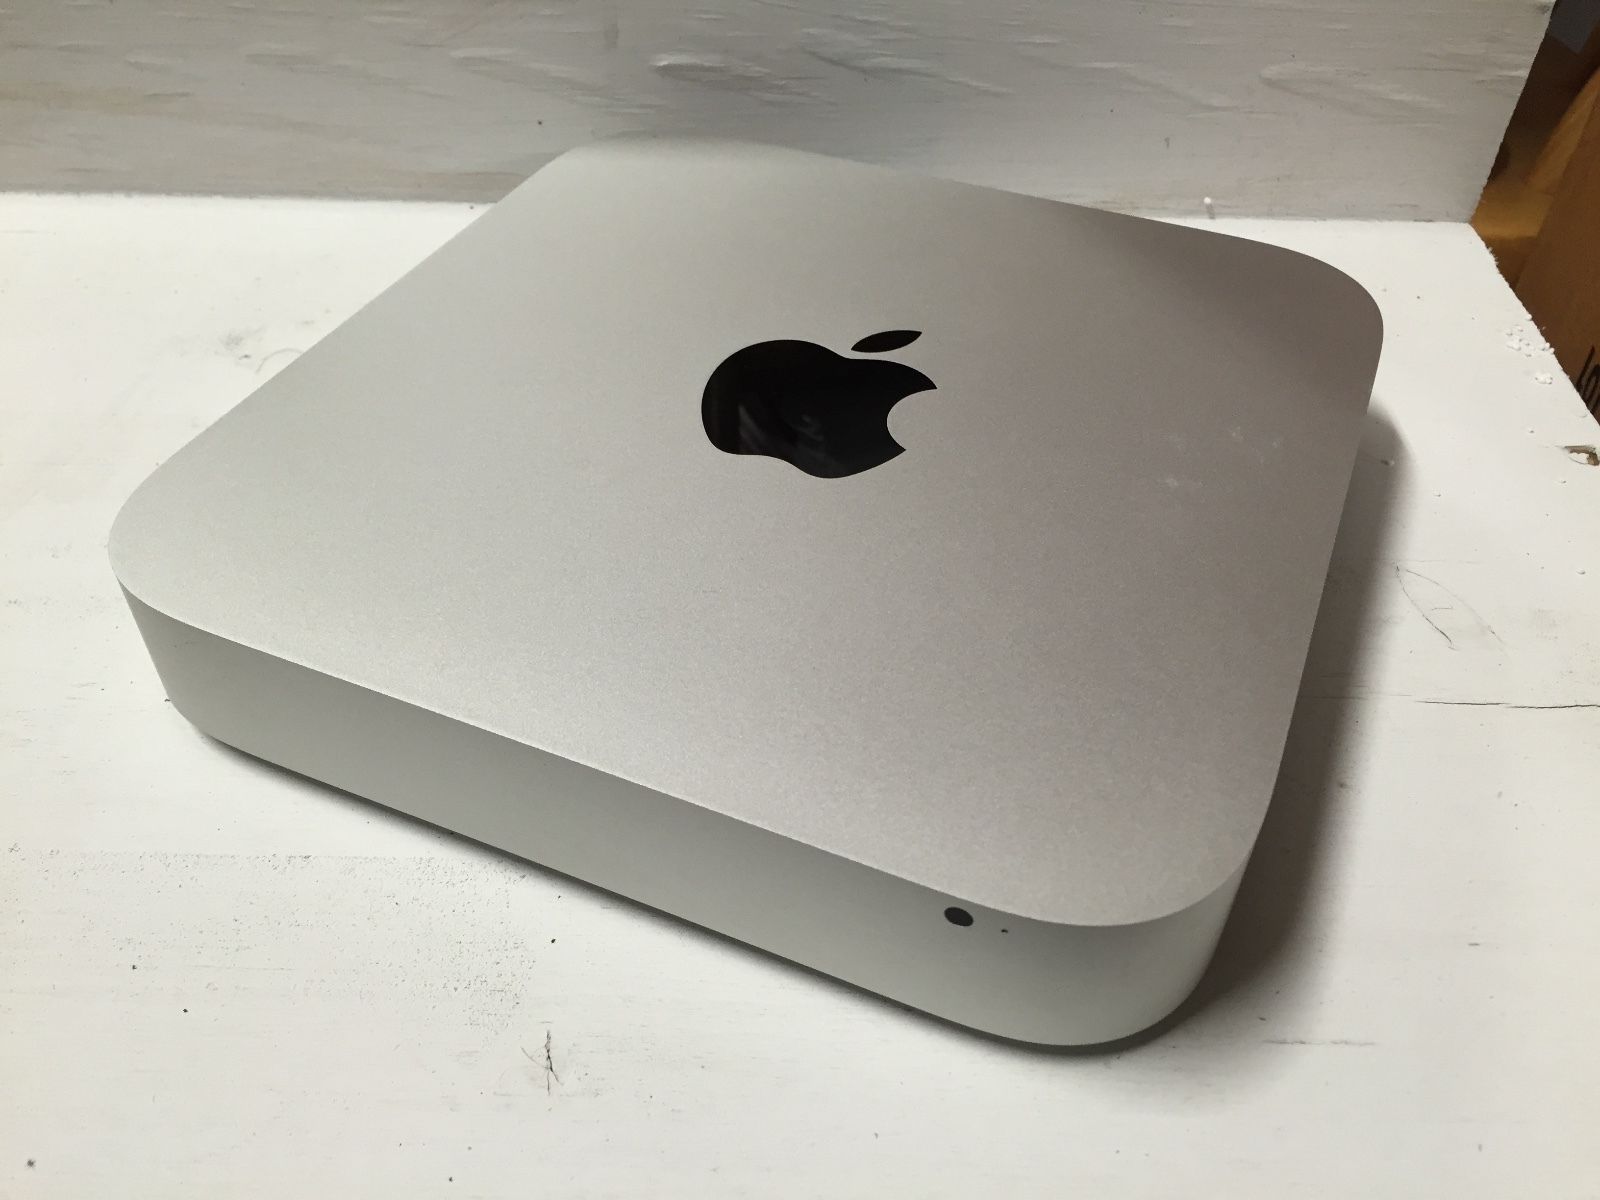 2012 mac mini i7 quadcore for sale